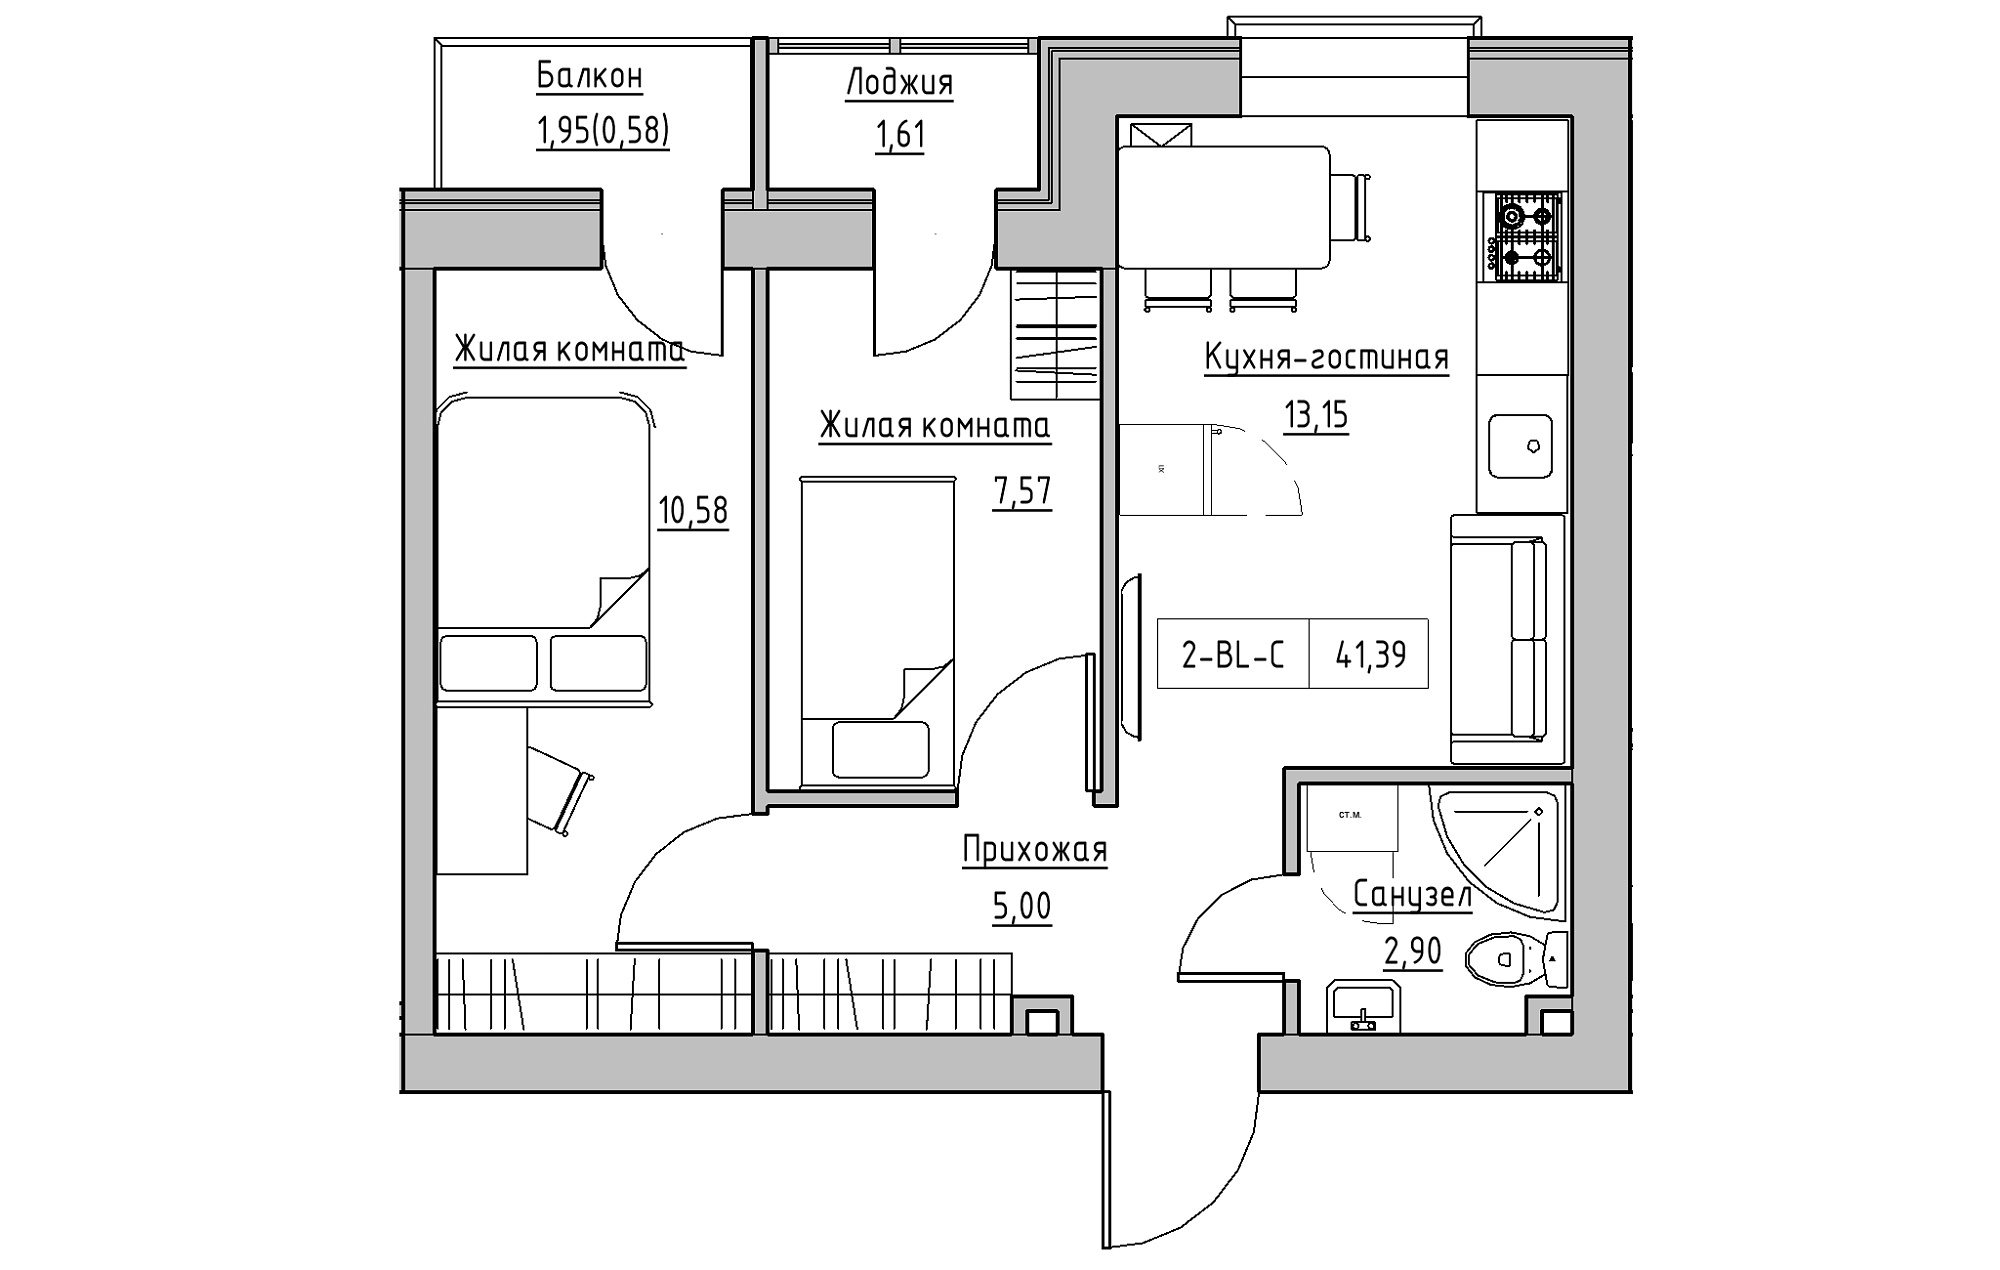 Планування 2-к квартира площею 41.39м2, KS-018-04/0005.